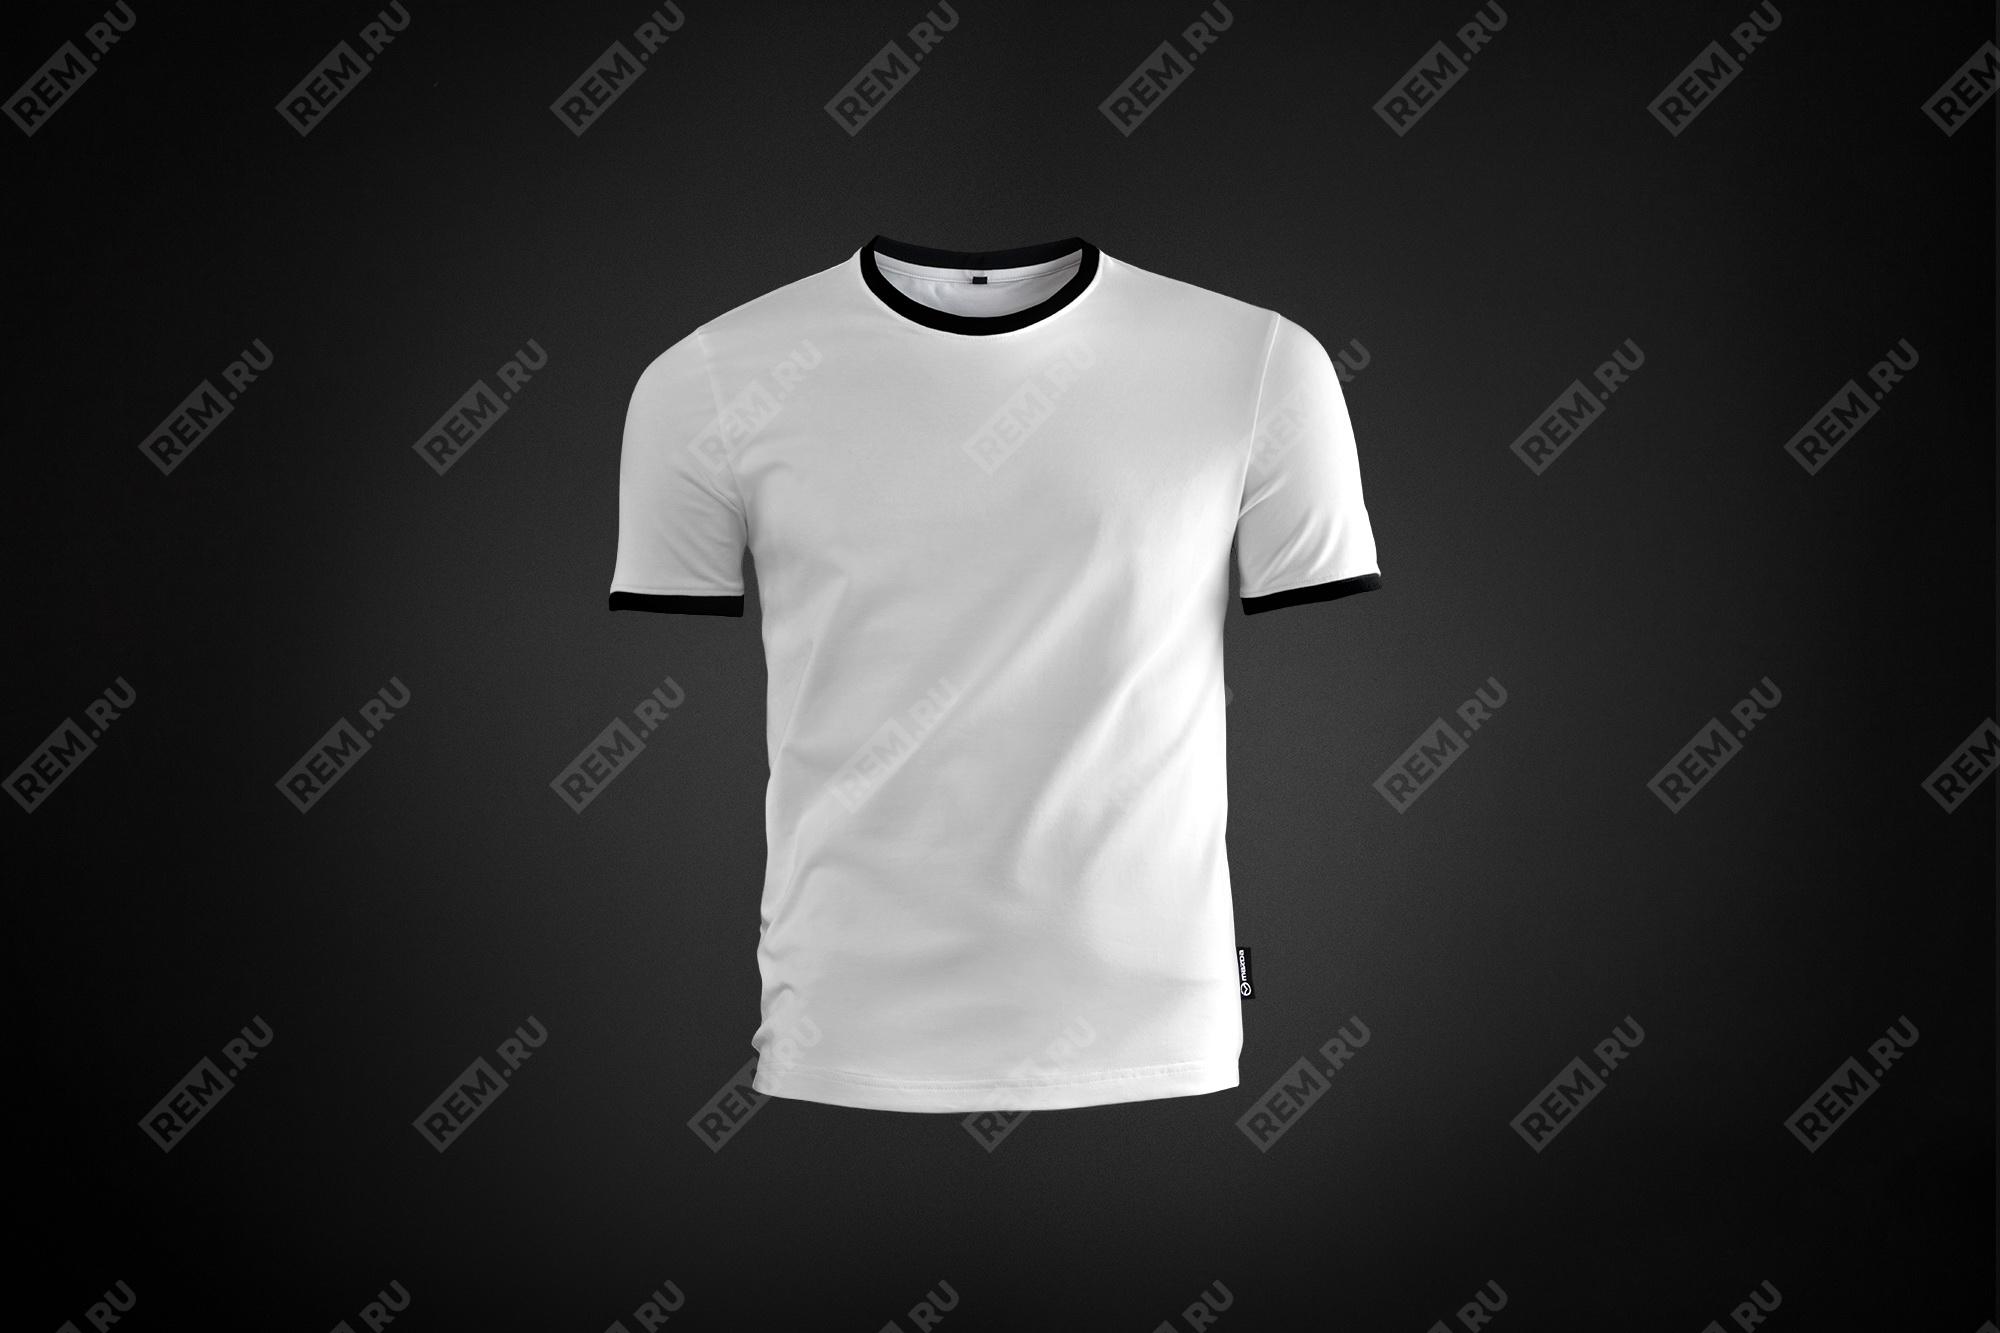  8300771188  футболка, мужская размер l (фото 1)